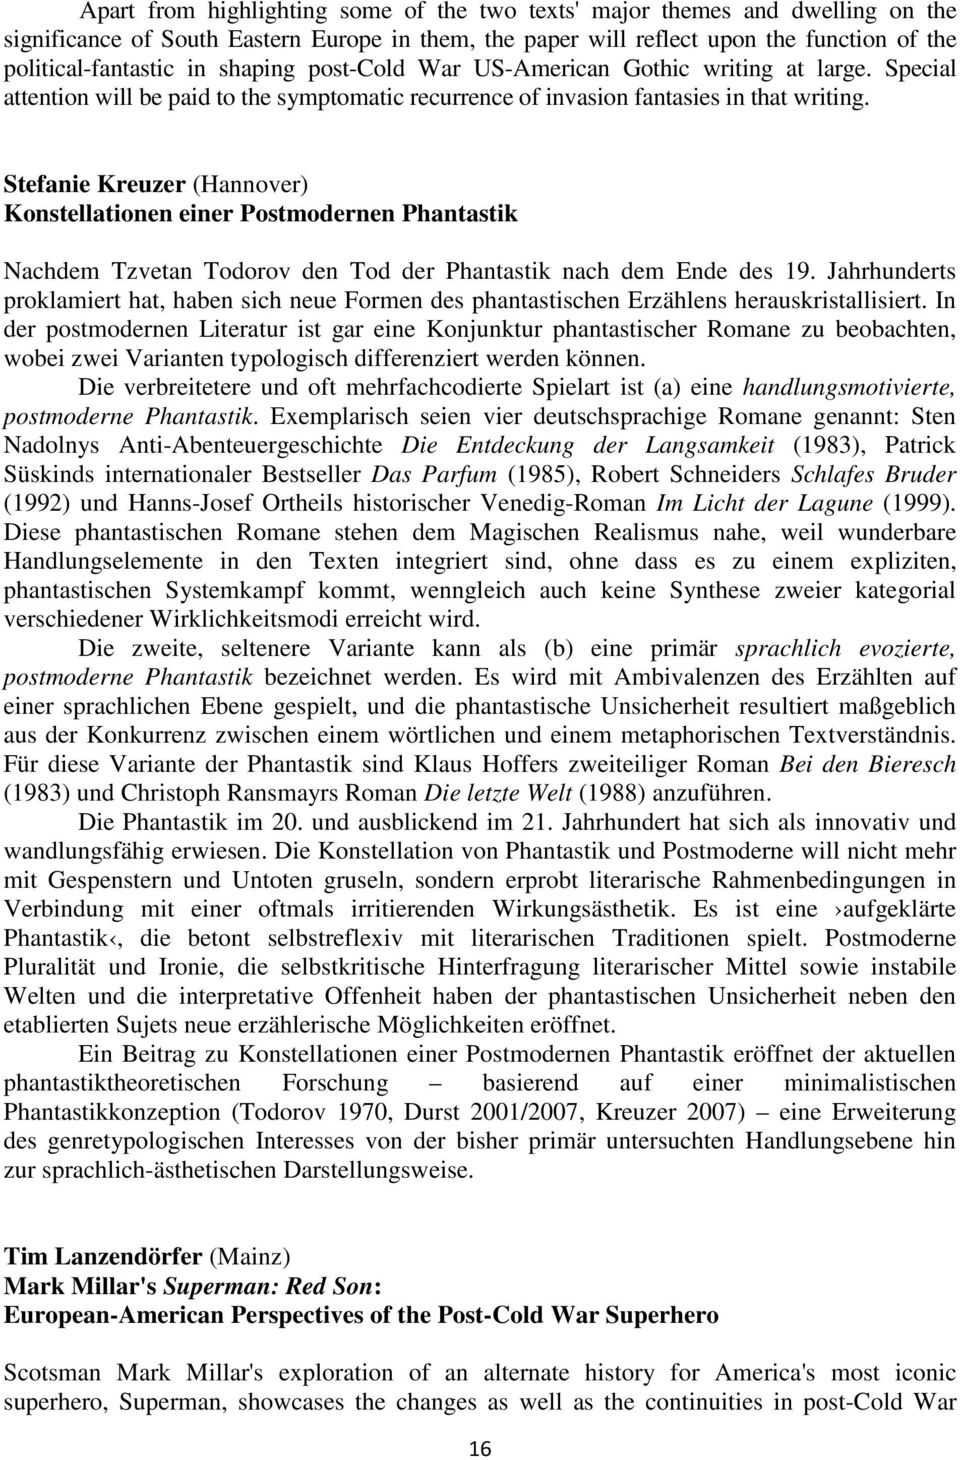 Stefanie Kreuzer (Hannover) Konstellationen einer Postmodernen Phantastik Nachdem Tzvetan Todorov den Tod der Phantastik nach dem Ende des 19.